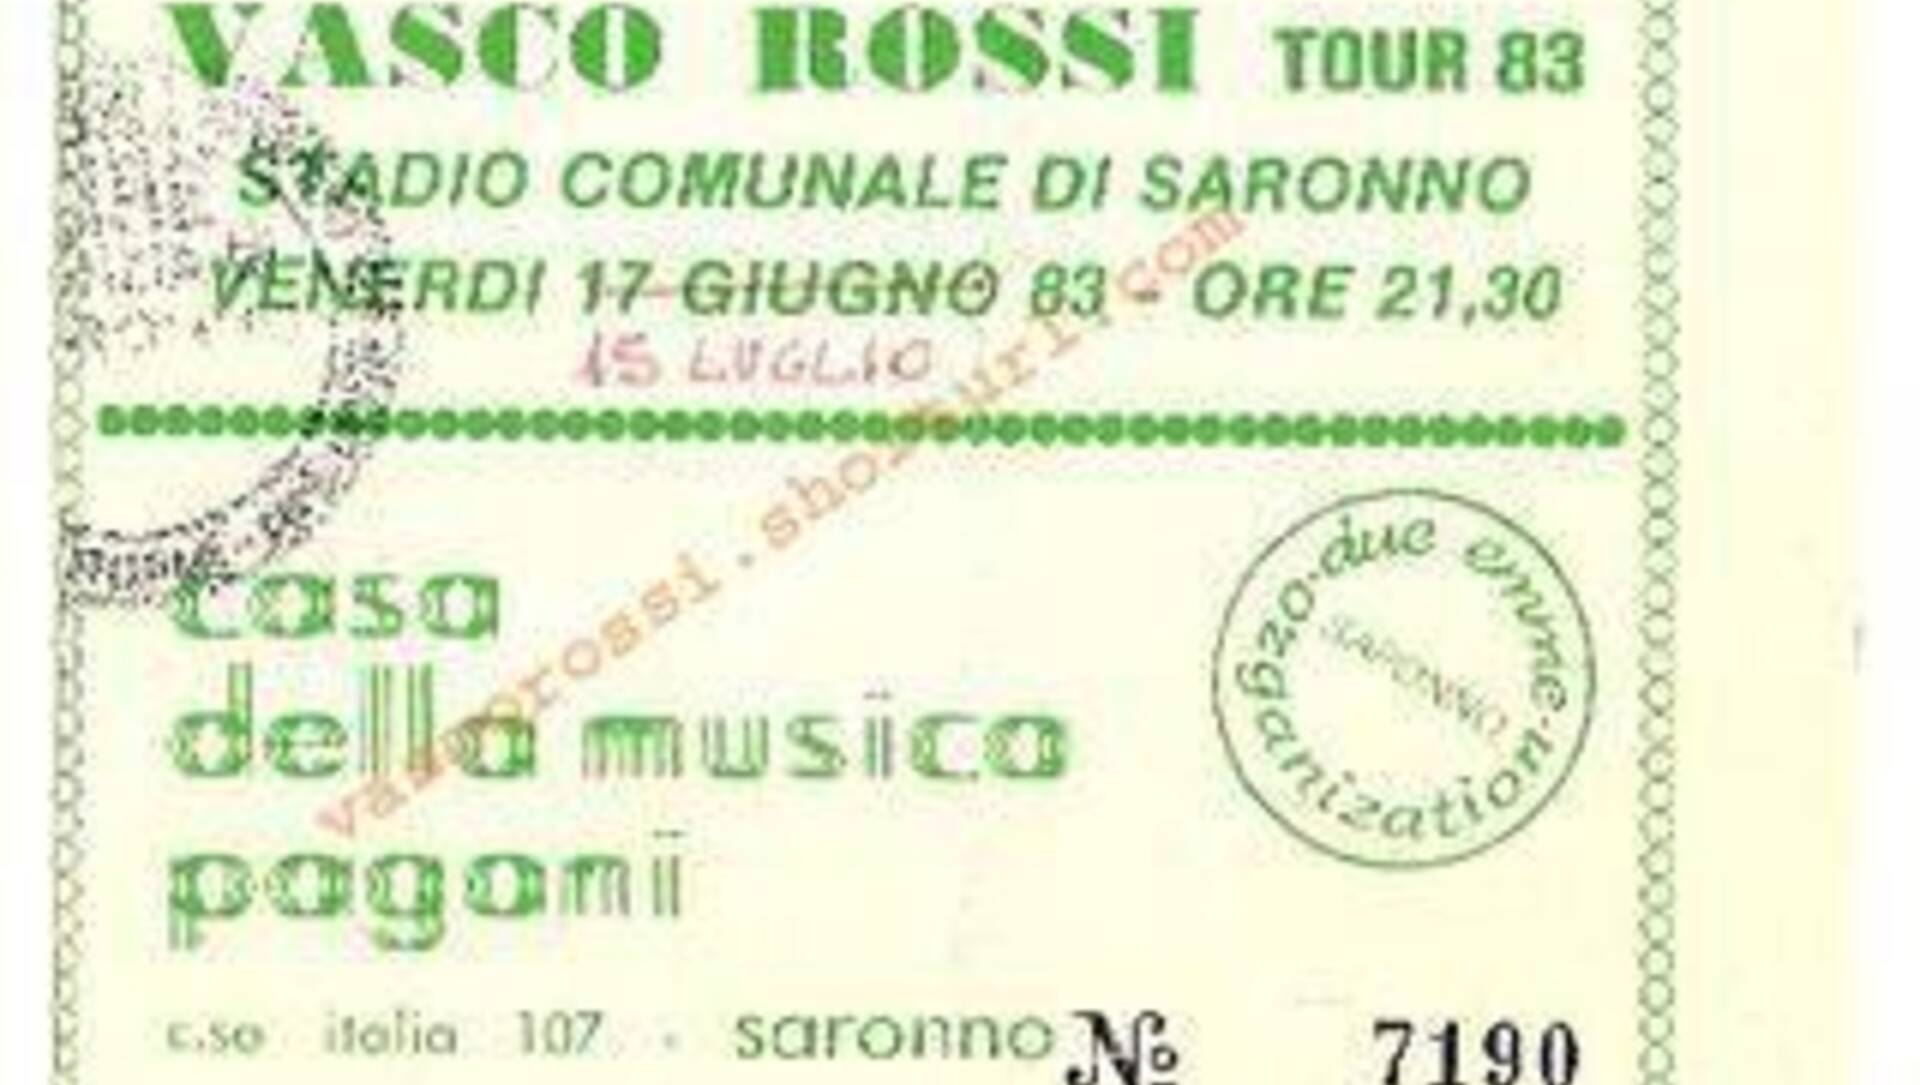 “2000 battute” Vasco a Saronno: quel concerto scolpito nella storia